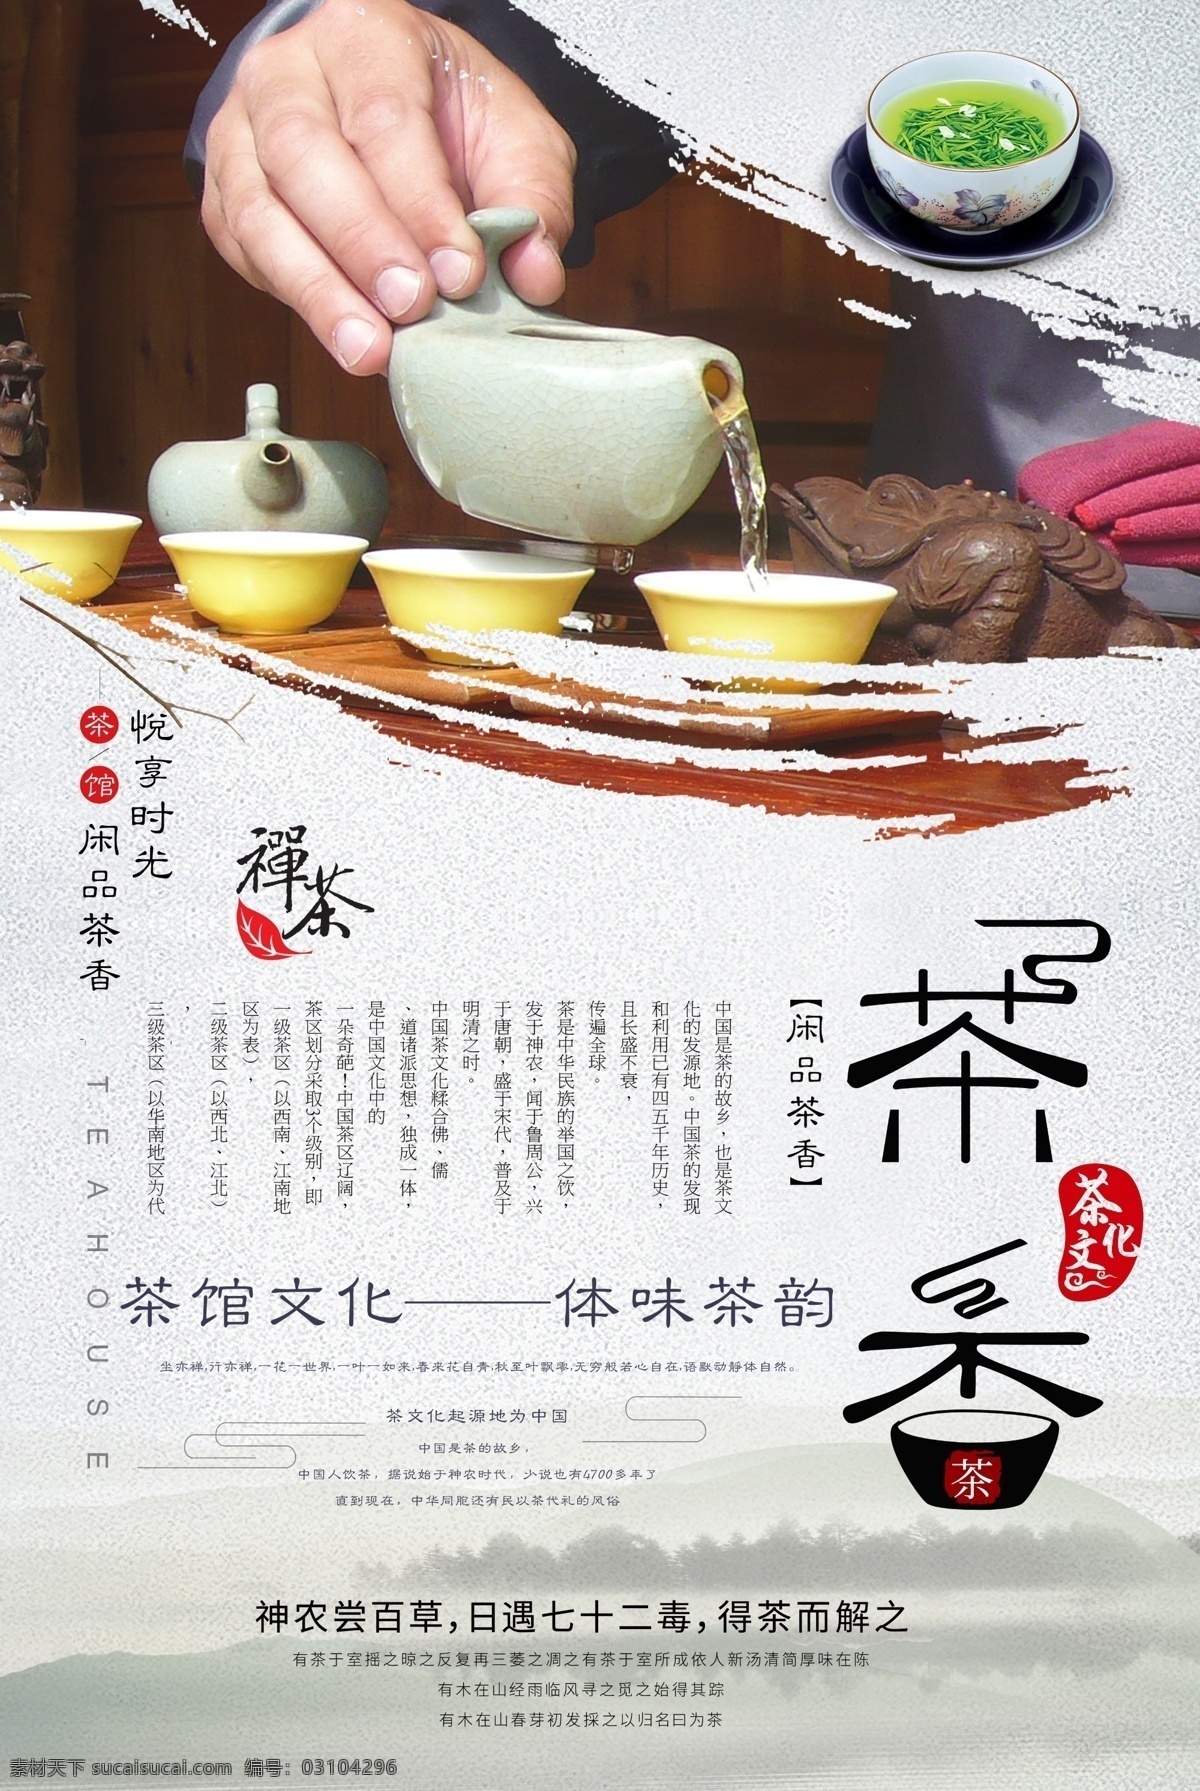 中国 茶文化 海报 分层 中国茶文化 茶道 茶香 茶文化海报 中国茶 茶道人生 人生如茶 茶艺 禅茶一味